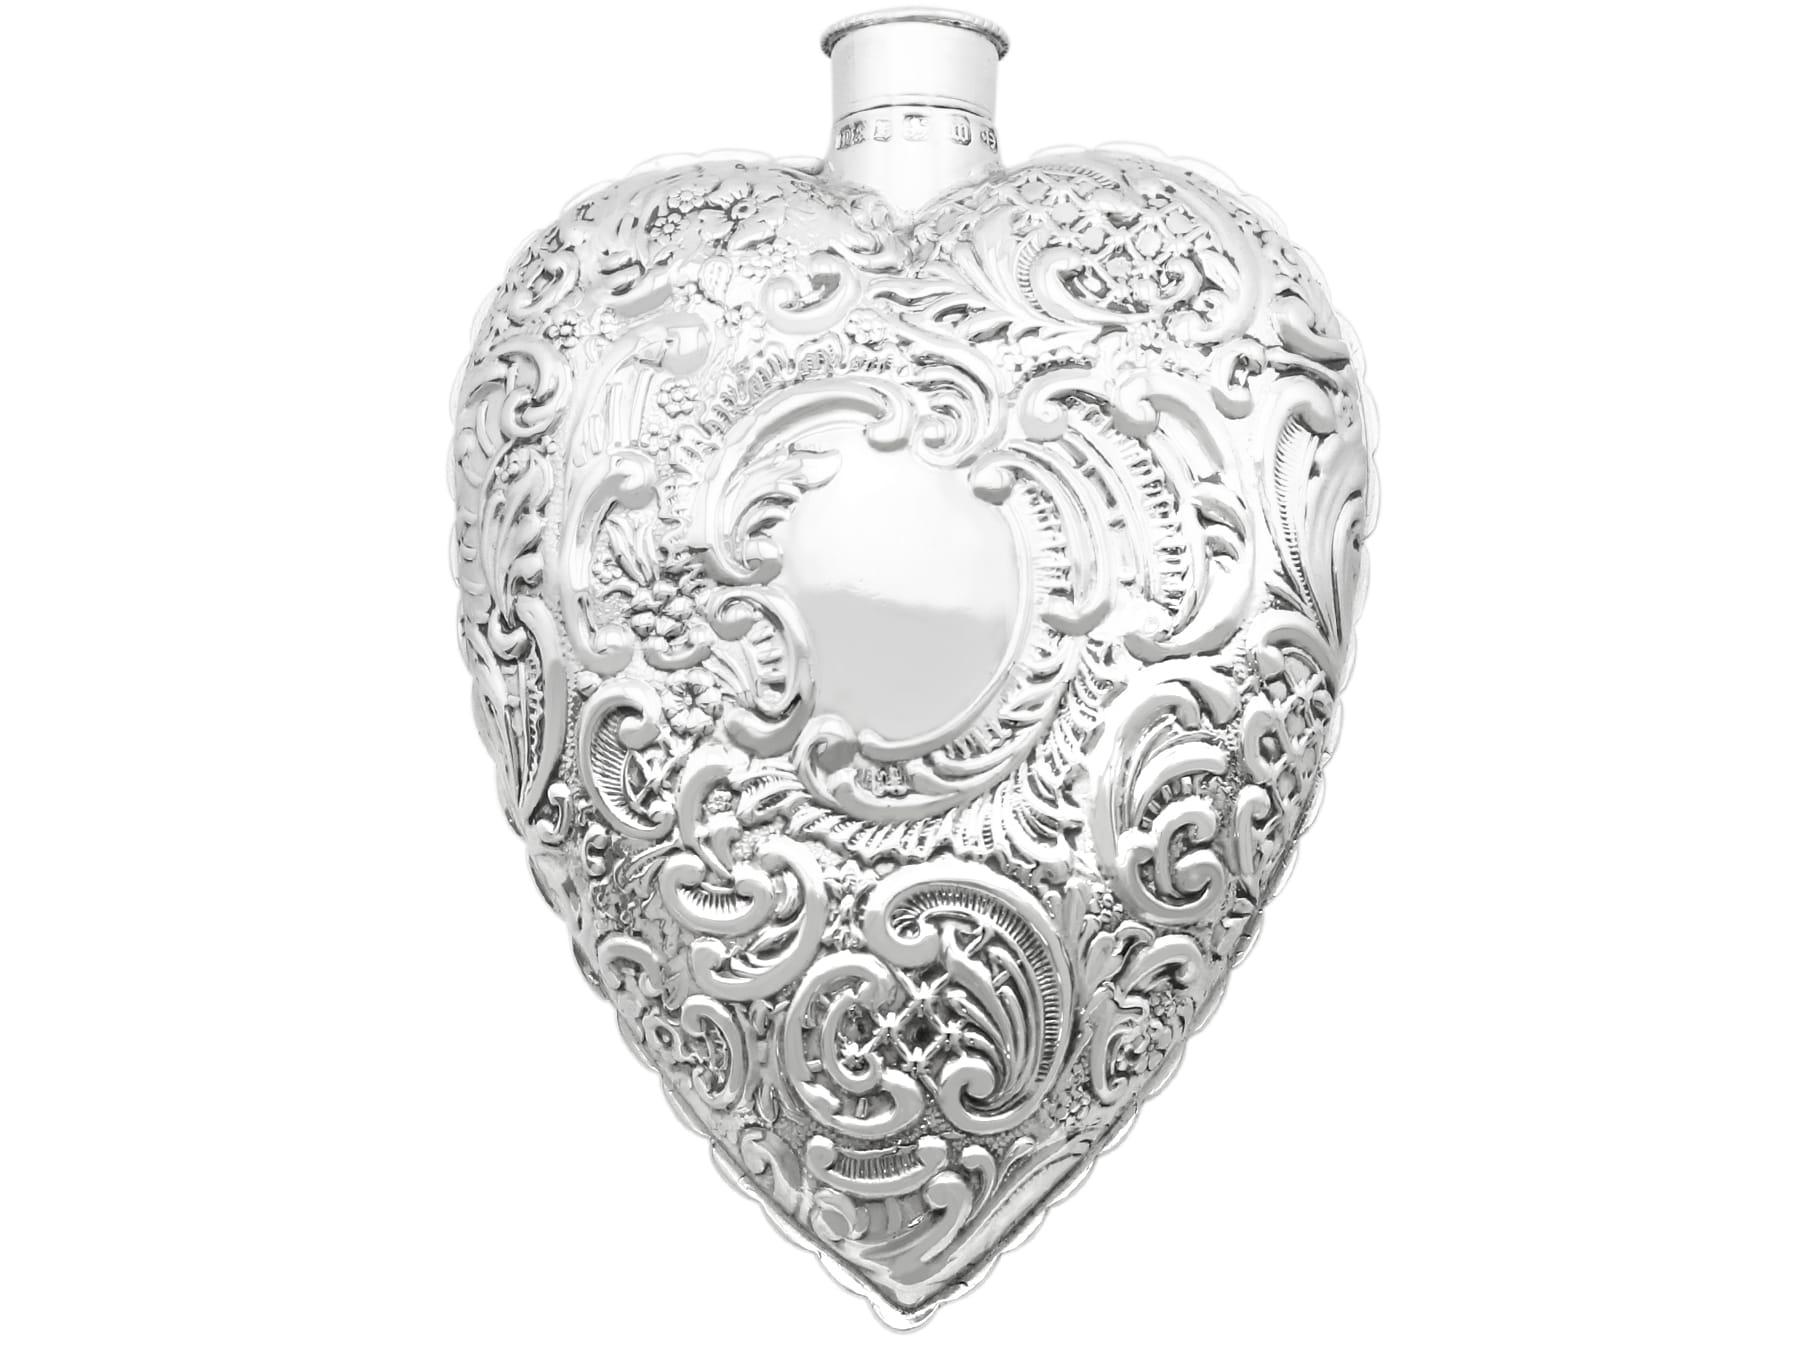 Eine außergewöhnliche, feine und beeindruckende antike viktorianische englische Sterling Silber herzförmige Parfümflasche; eine Ergänzung zu unserer vielfältigen Silberwaren Sammlung.

Diese feine antike viktorianische Sterlingsilber-Duftflasche hat